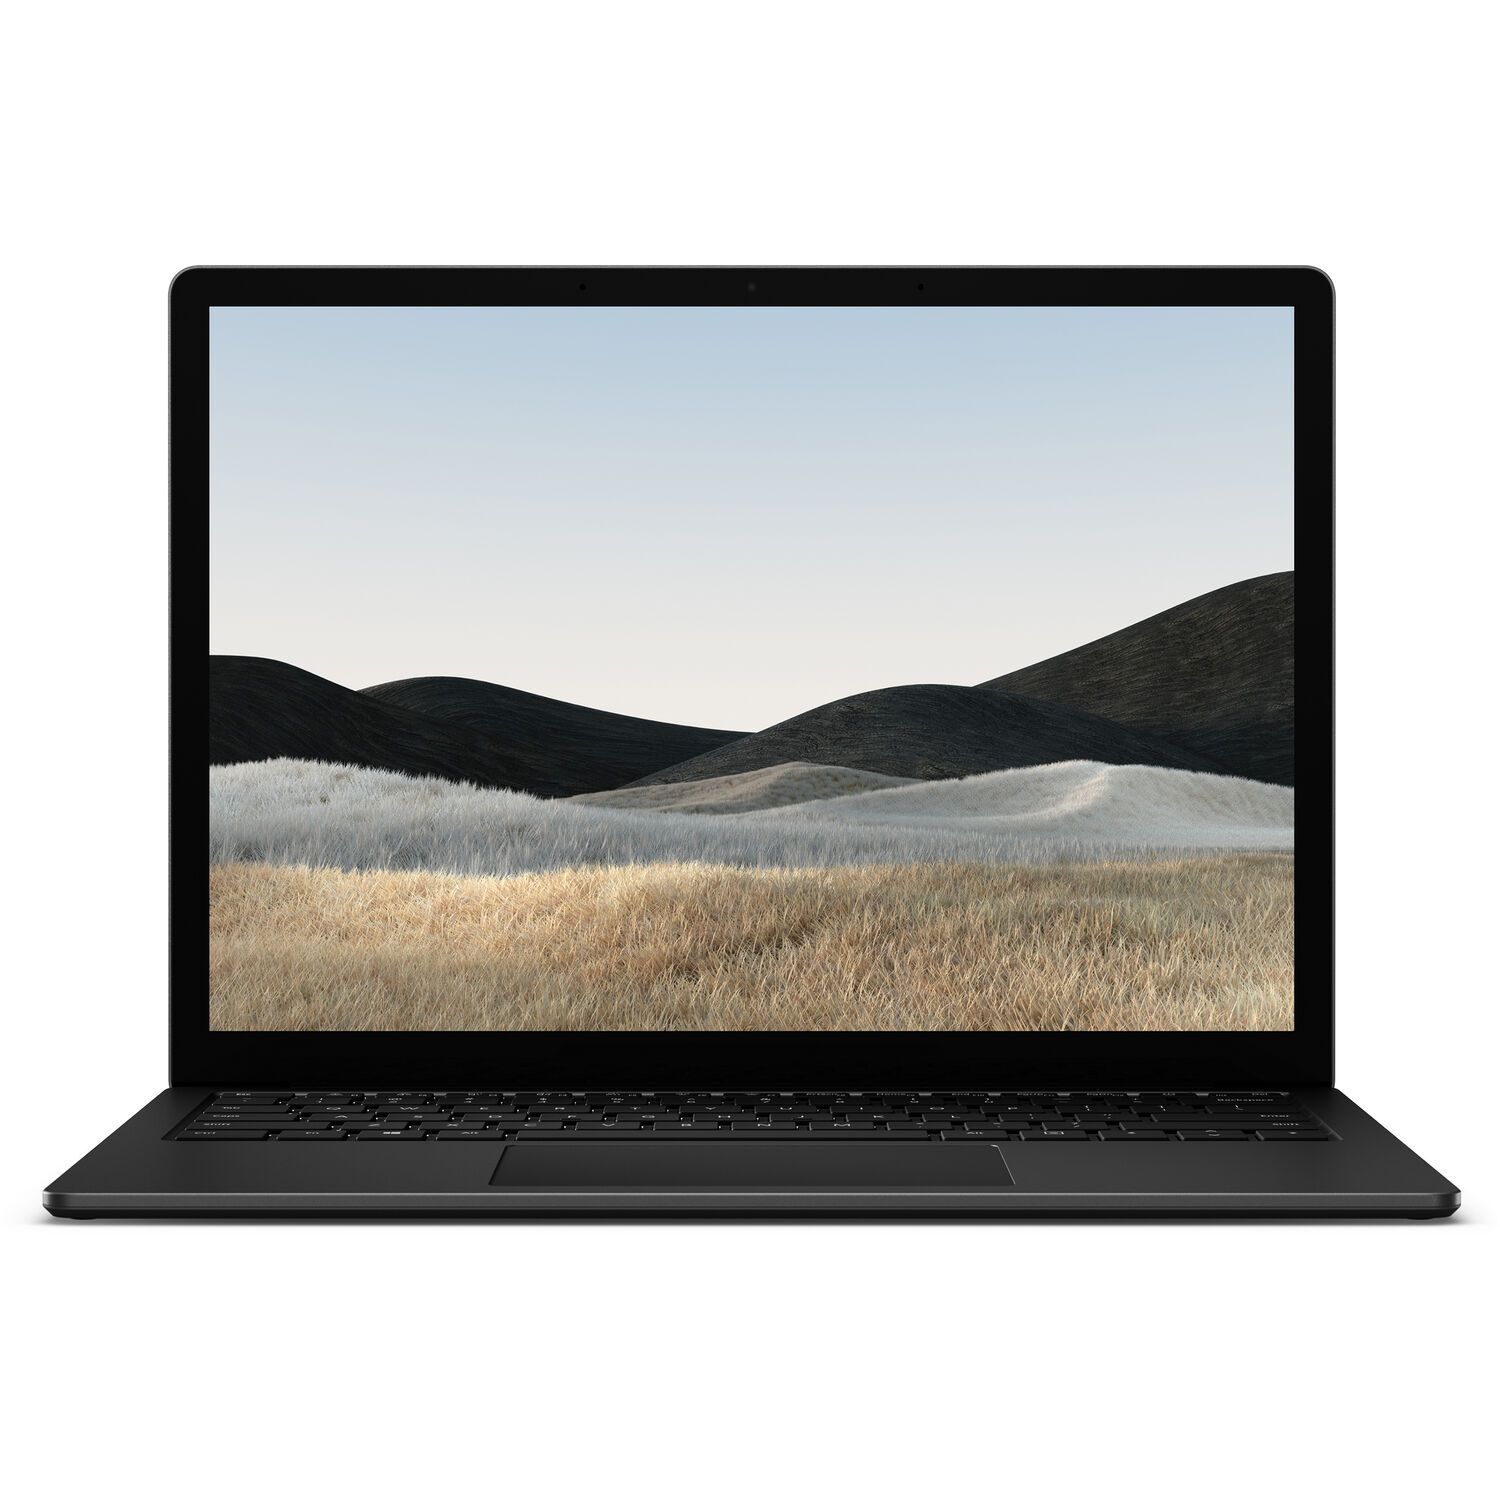 نکته خرید - قیمت روز لپ تاپ 13.5 اینچی مایکروسافت مدل Surface 4 - E خرید